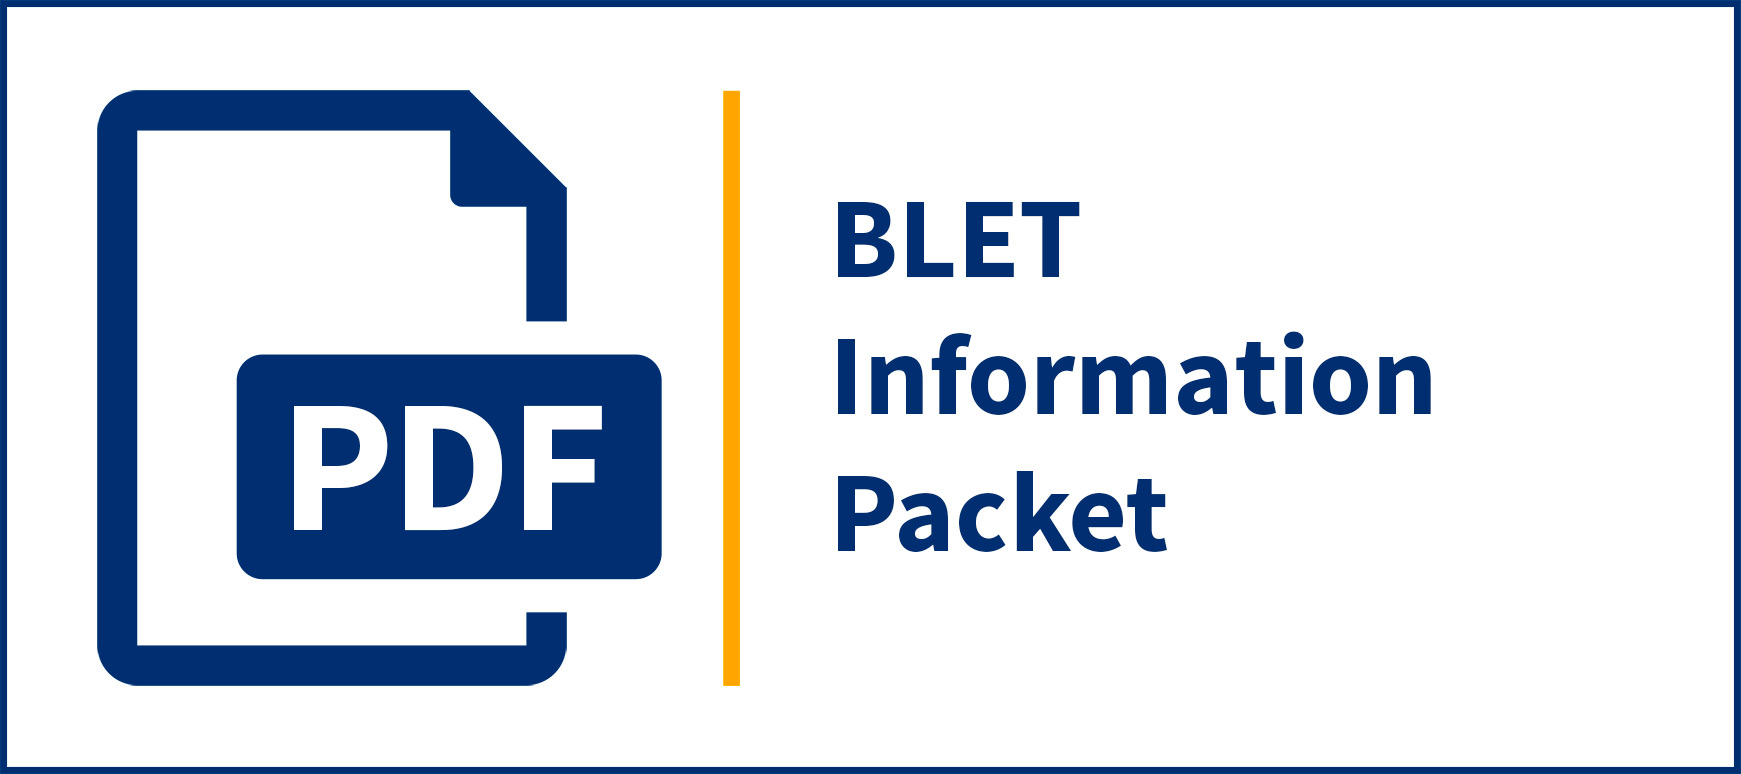 BLET Information Packet